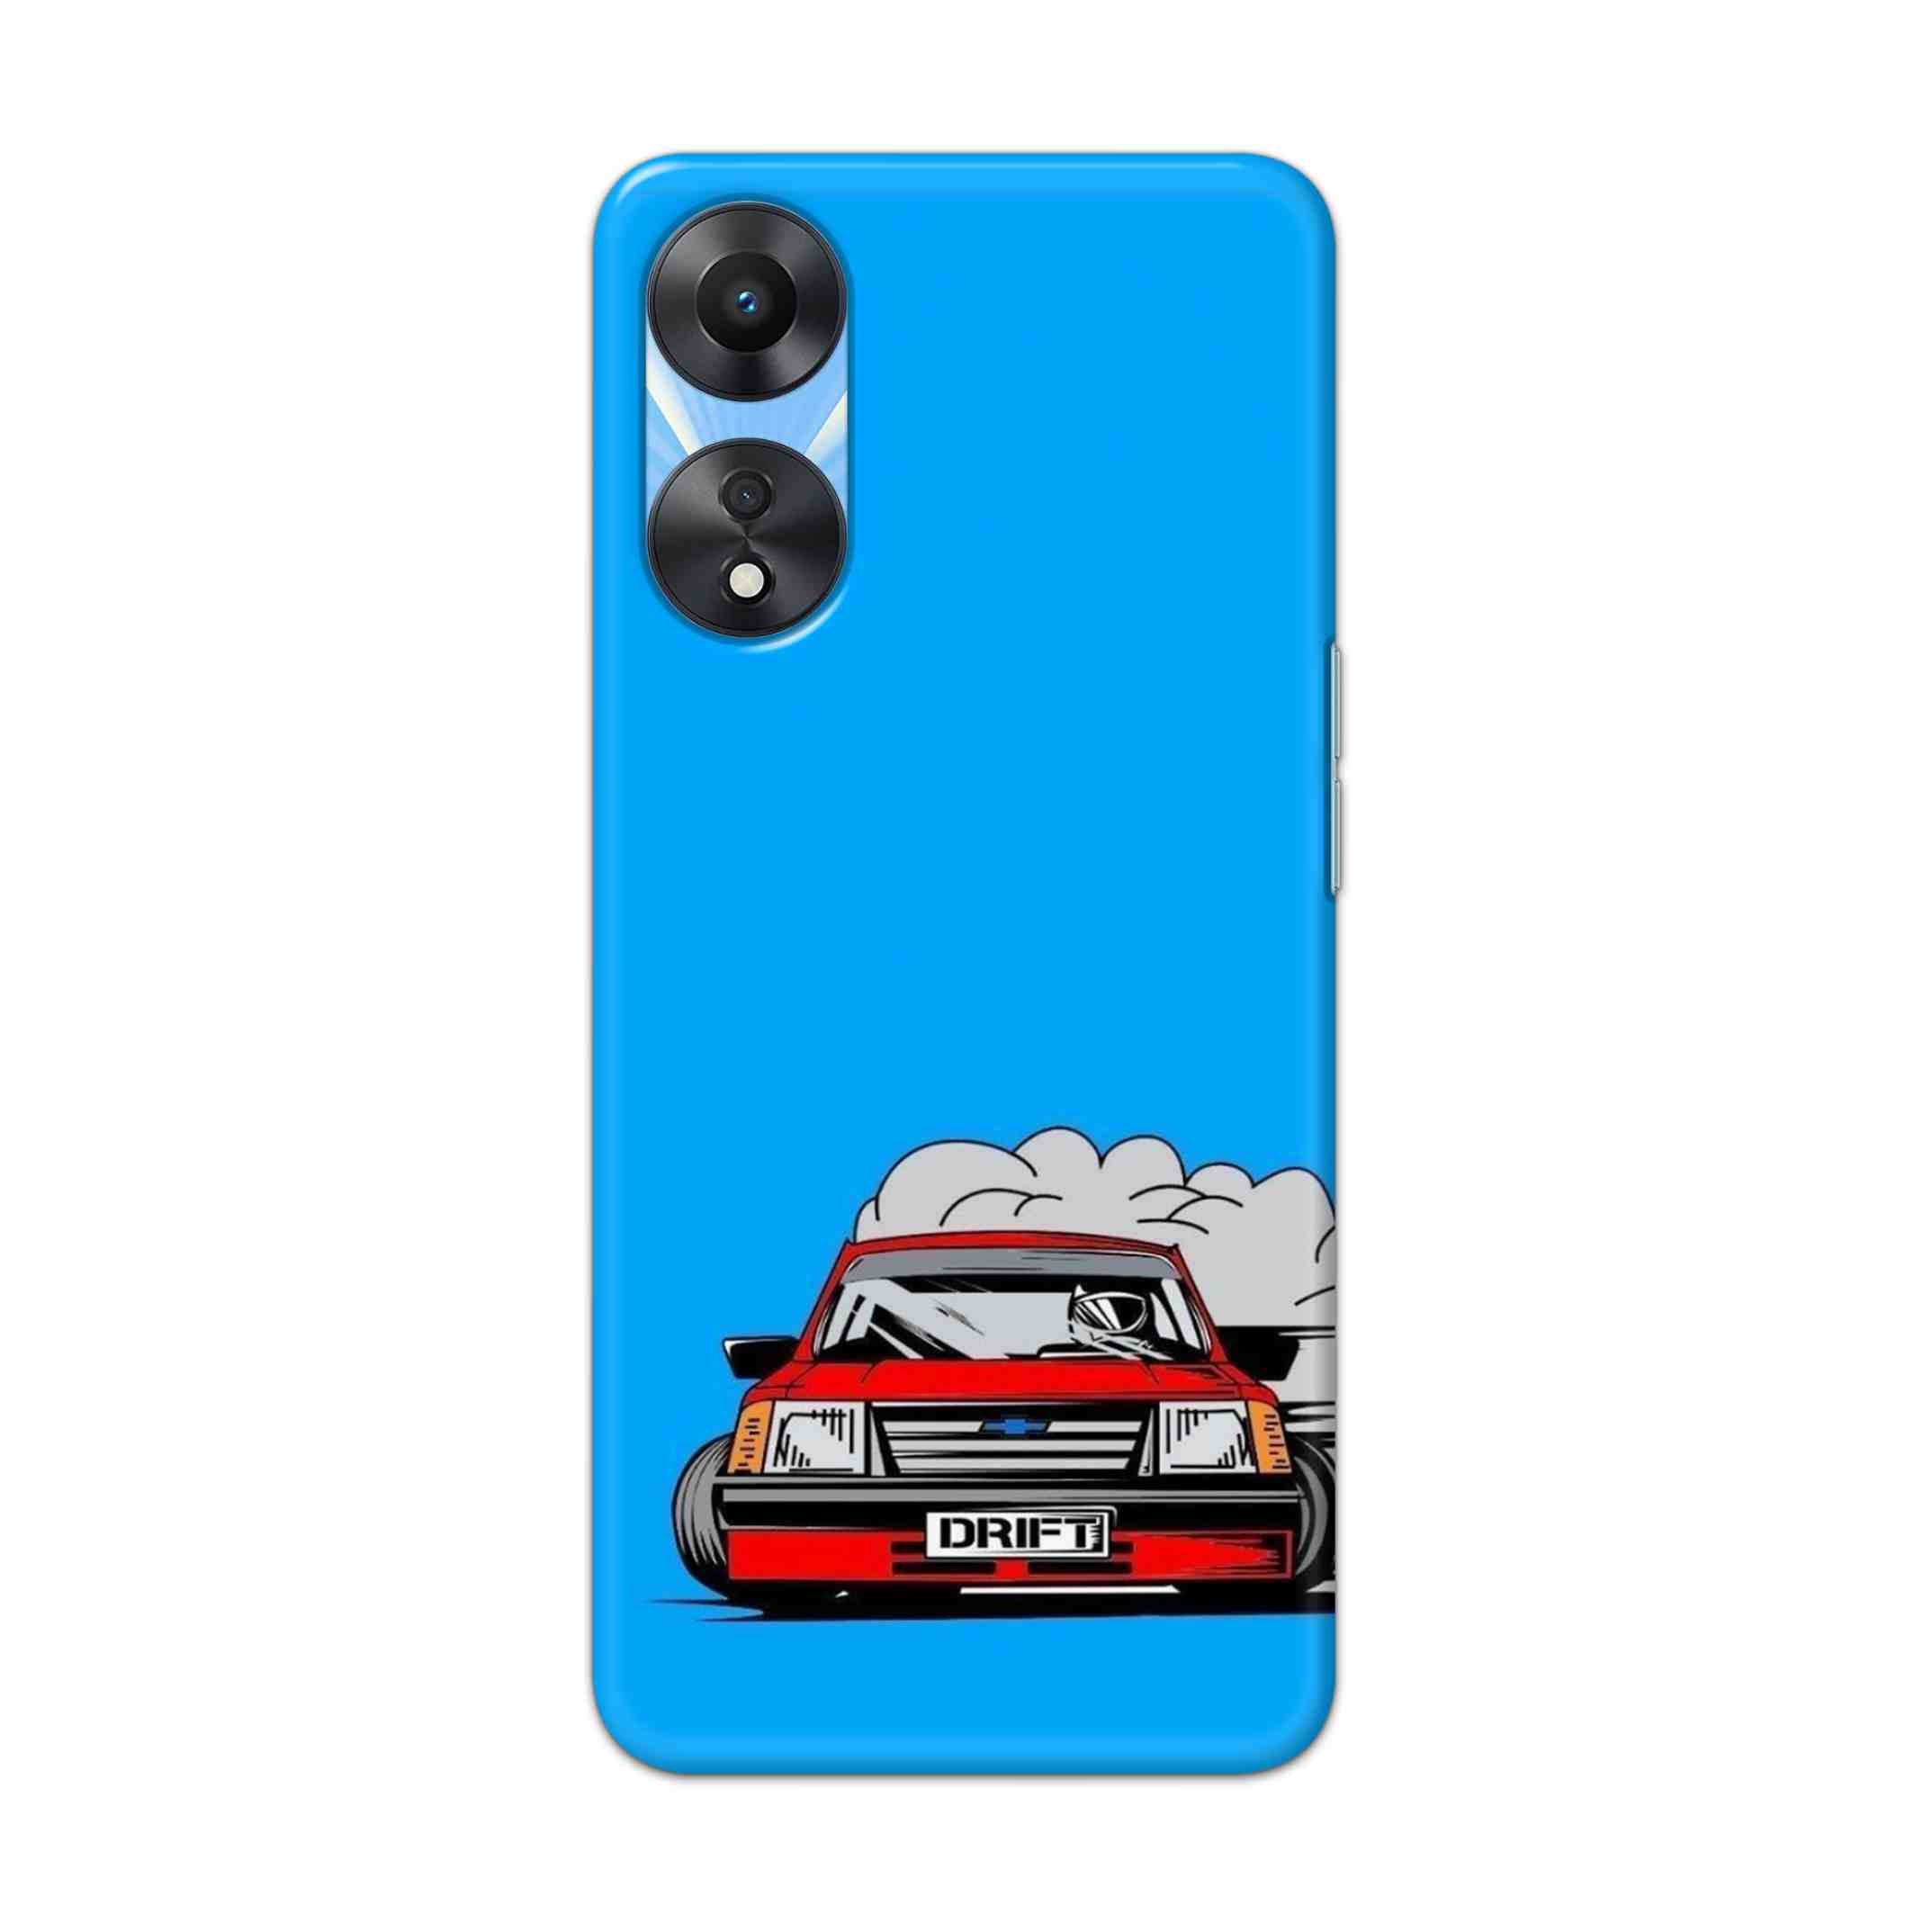 Buy Drift Hard Back Mobile Phone Case Cover For OPPO A78 Online